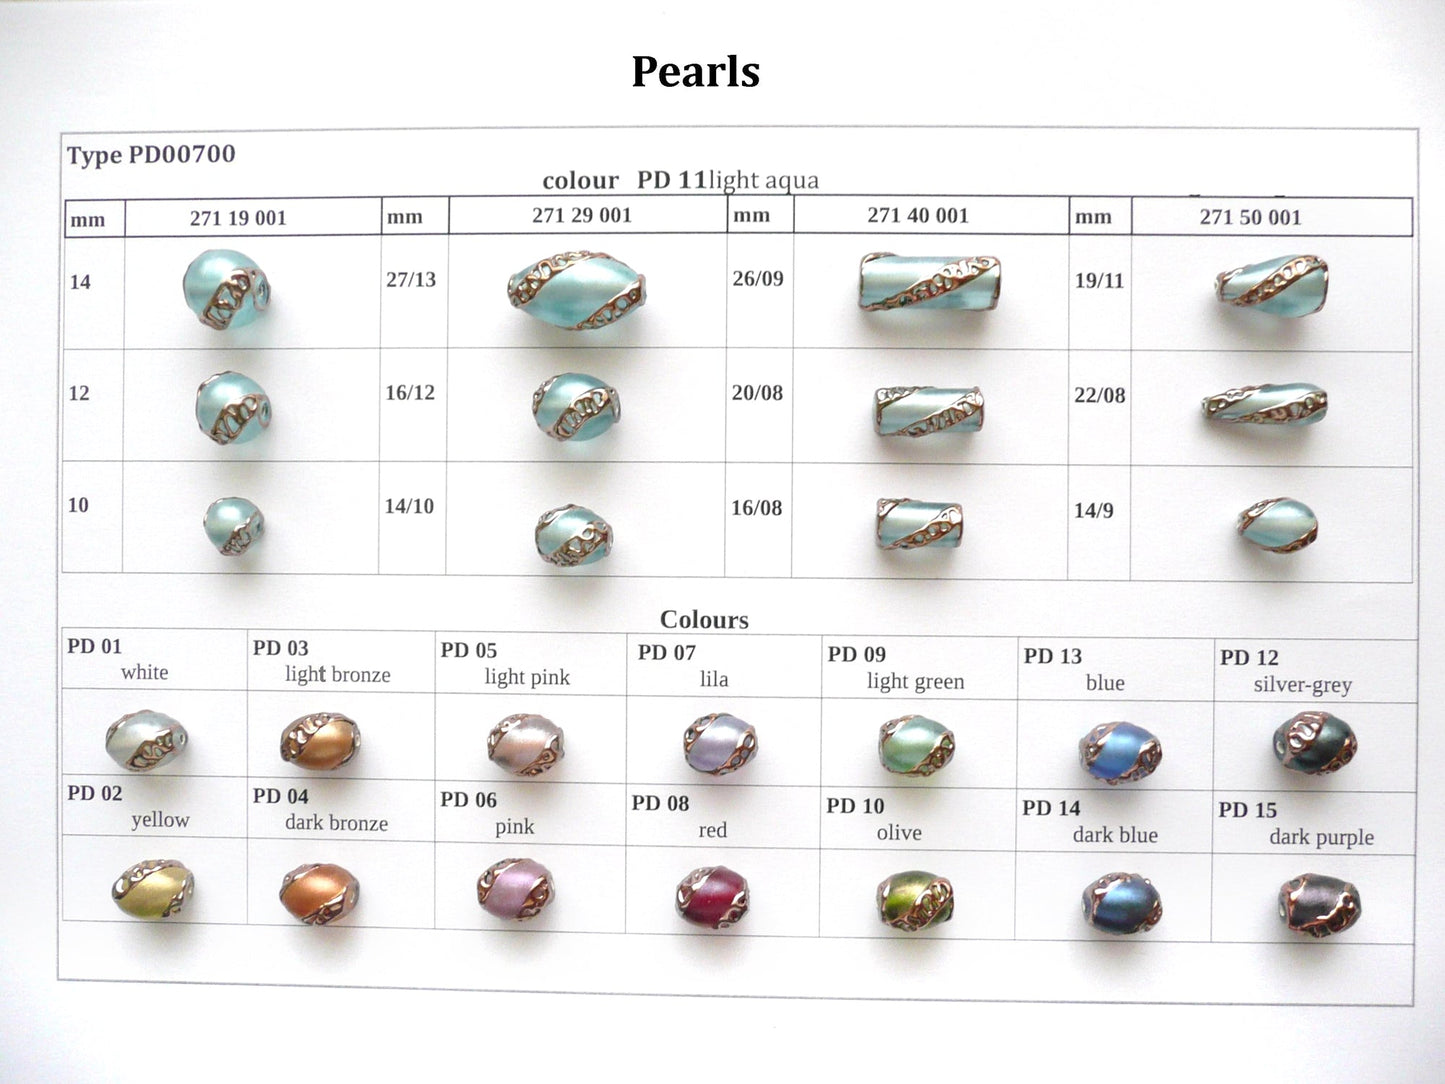 30 pcs Lampwork Beads Pearl Decor PD700 / Cylinder (271-40-001), Handmade, Preciosa Glass, Czech Republic